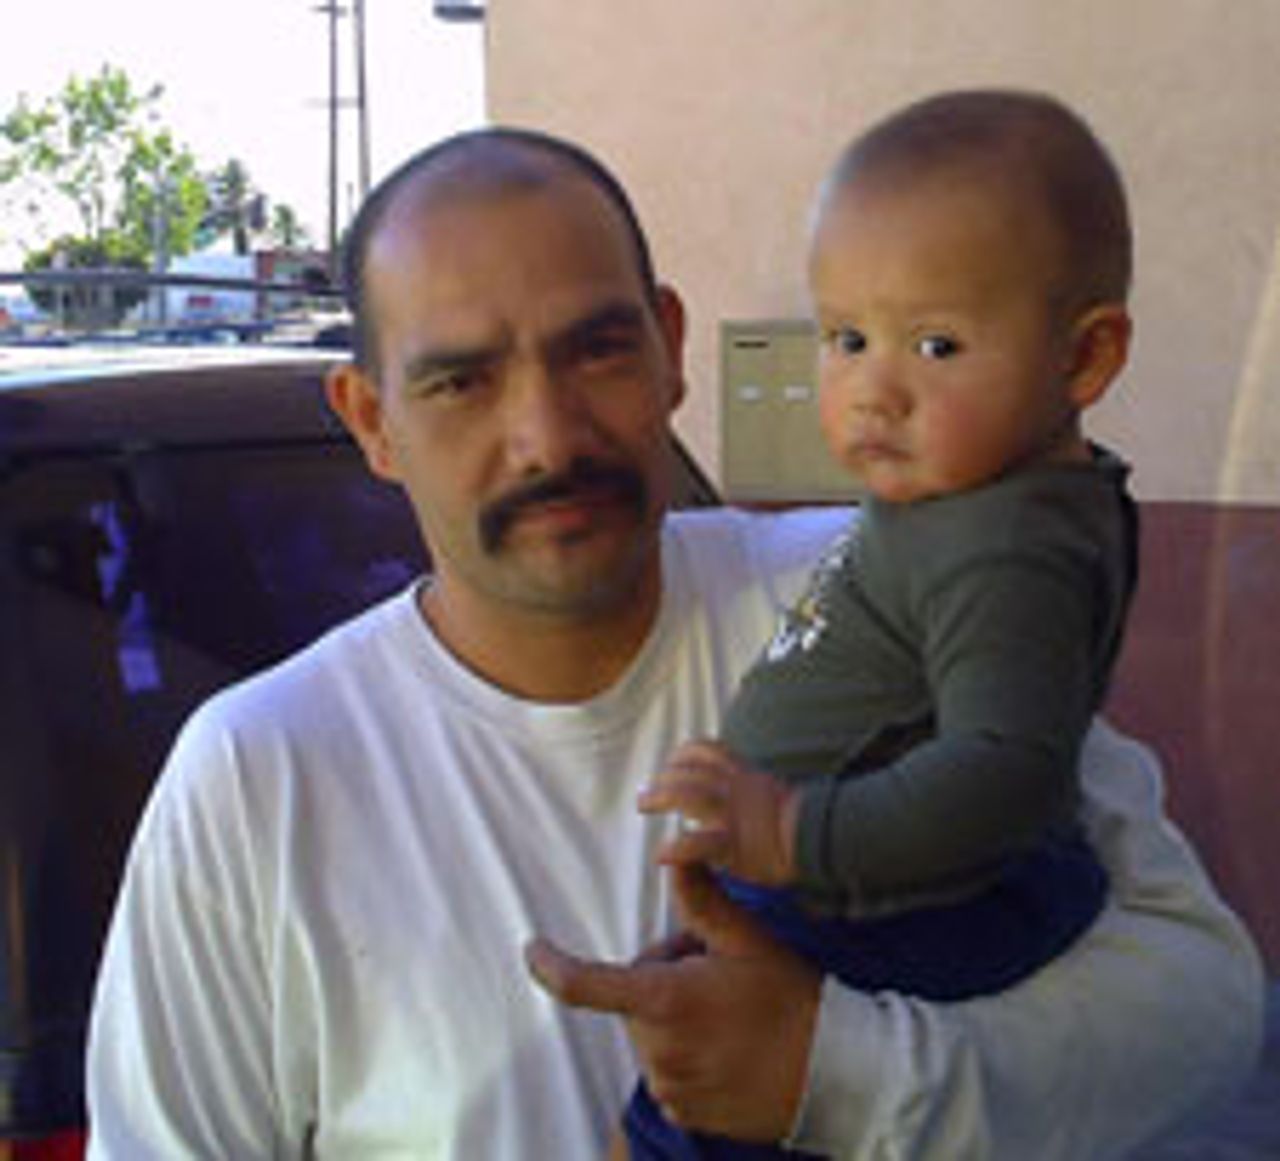 José Cejas and his son